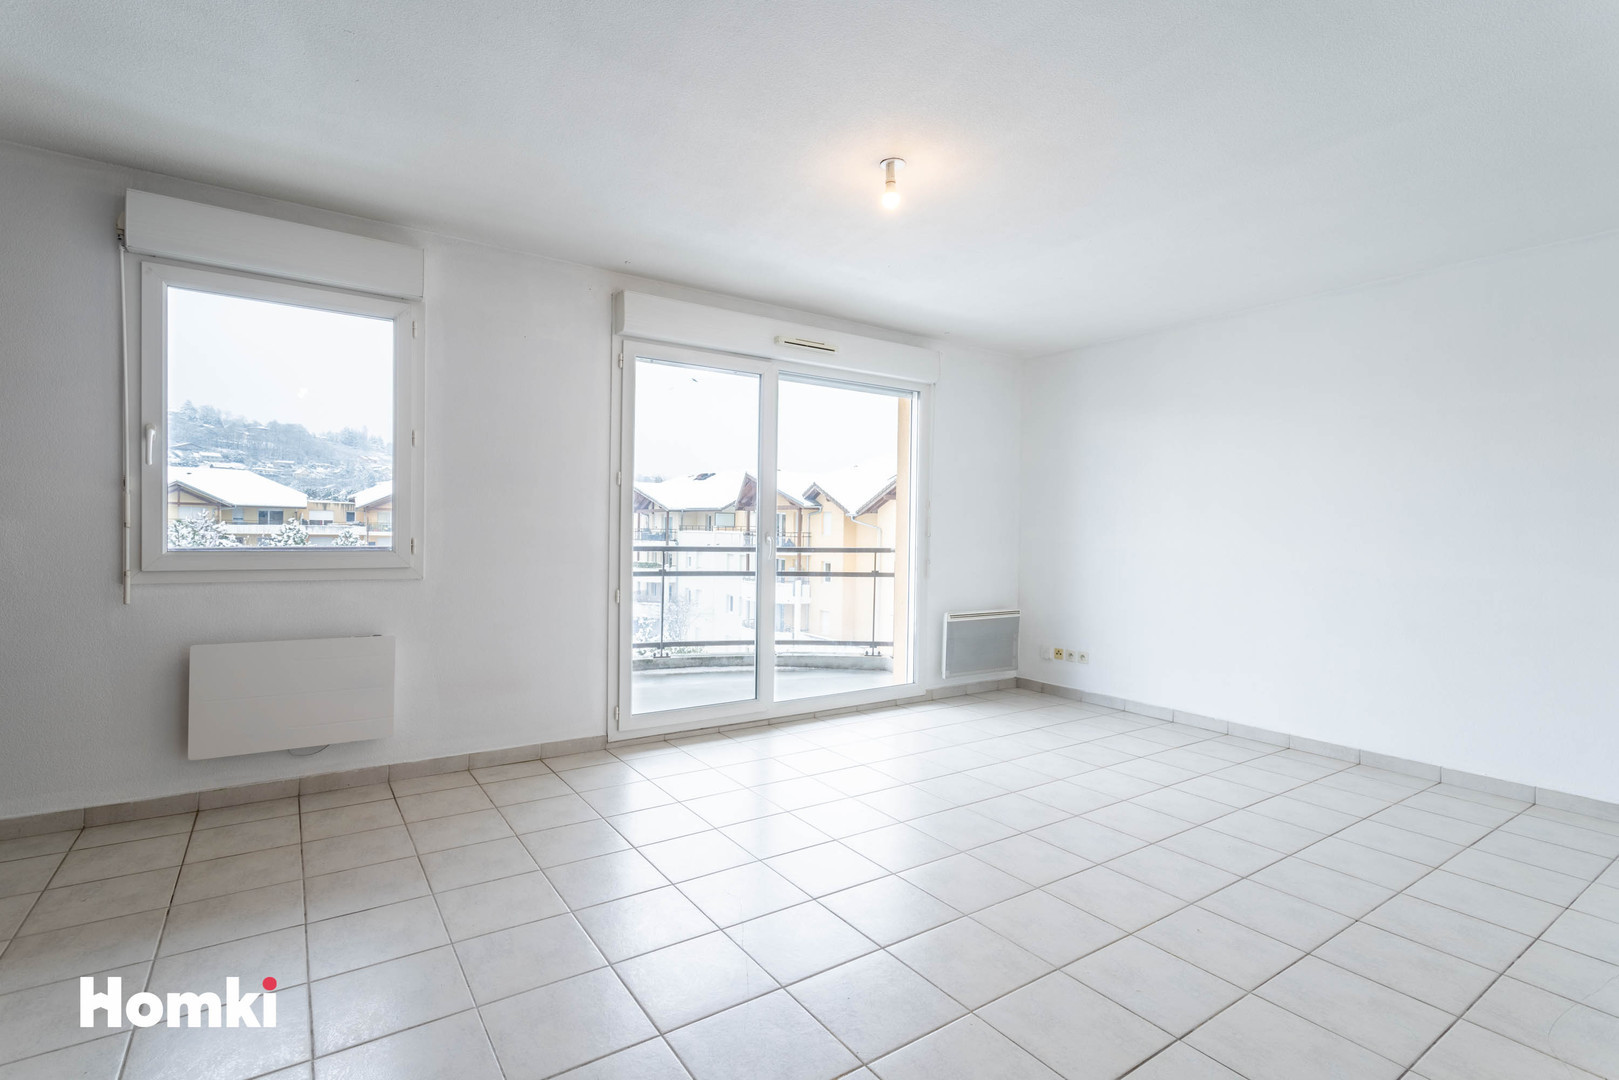 Homki - Vente Appartement  de 47.0 m² à Vétraz-Monthoux 74100